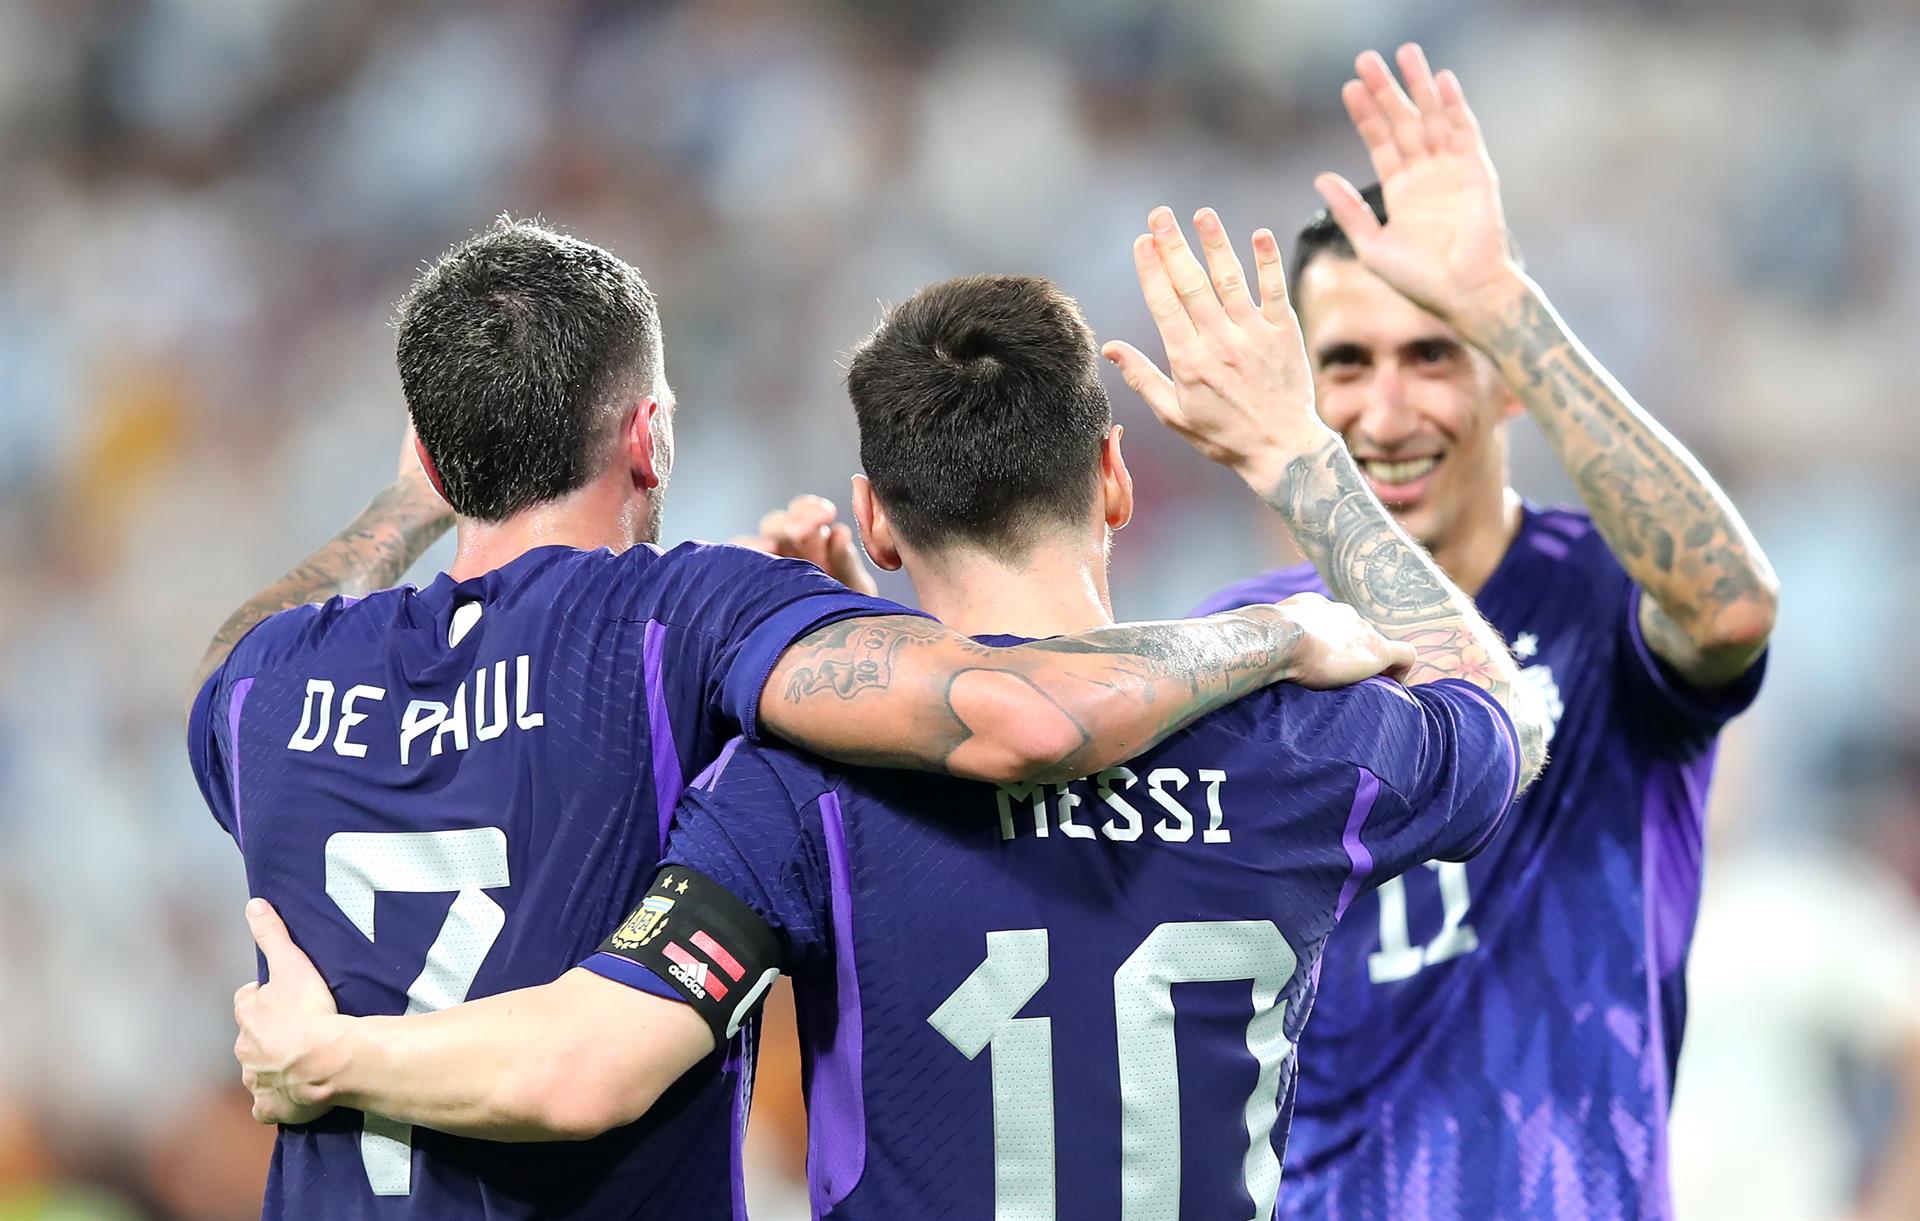 De Paul, Messi y Di María celebran un gol en un amistoso de Argentina contra Emiratos Árabes, en Abu Dhabi, el 17 de noviembre de 2022. EFE/ALI HAIDER